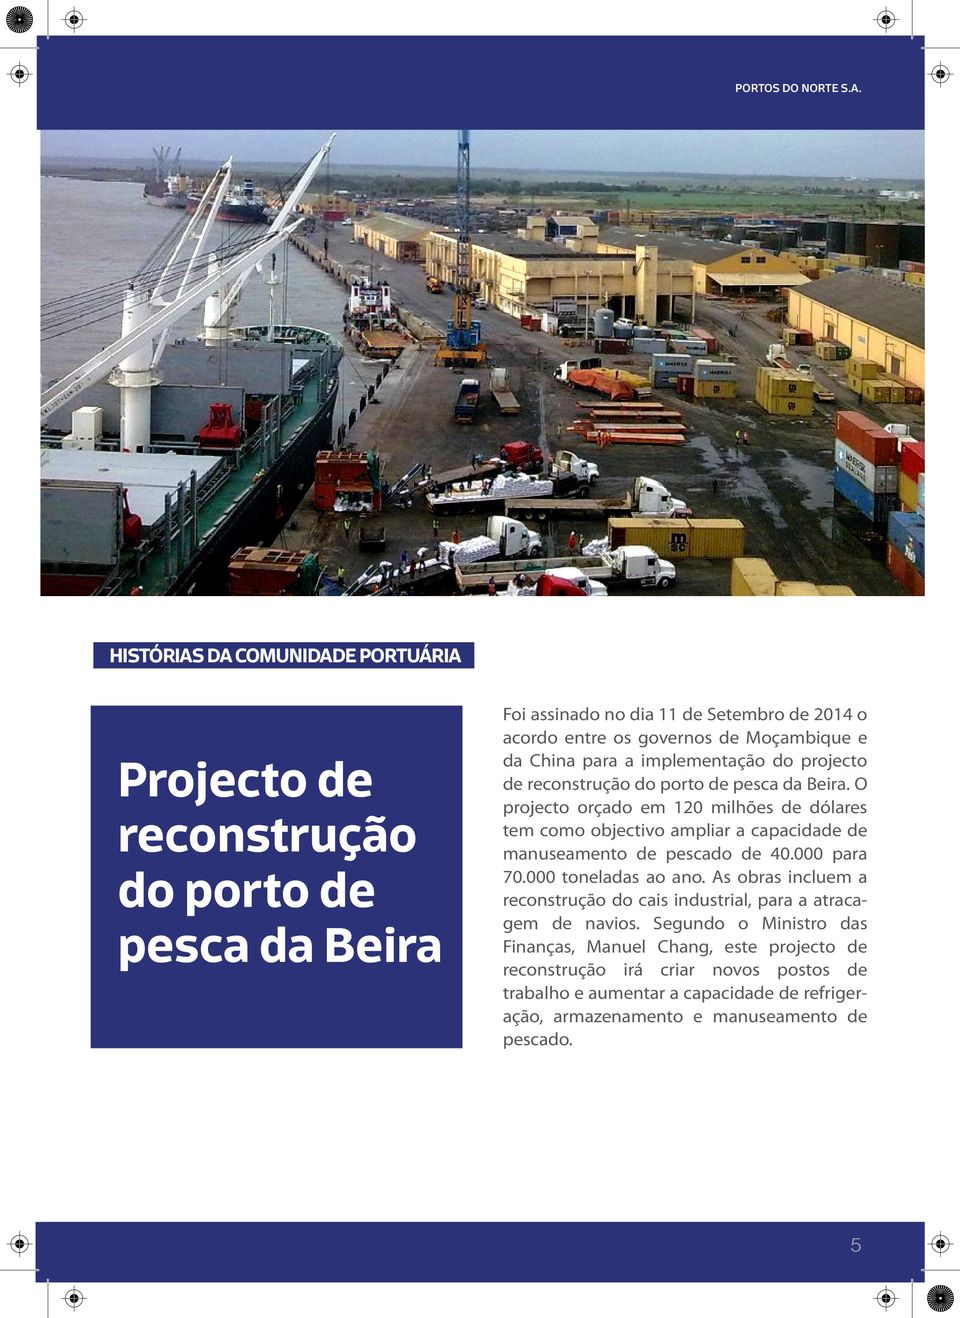 HISTÓRIAS DA COMUNIDADE PORTUÁRIA Projecto de reconstrução do porto de pesca da Beira Foi assinado no dia 11 de Setembro de 2014 o acordo entre os governos de Moçambique e da China